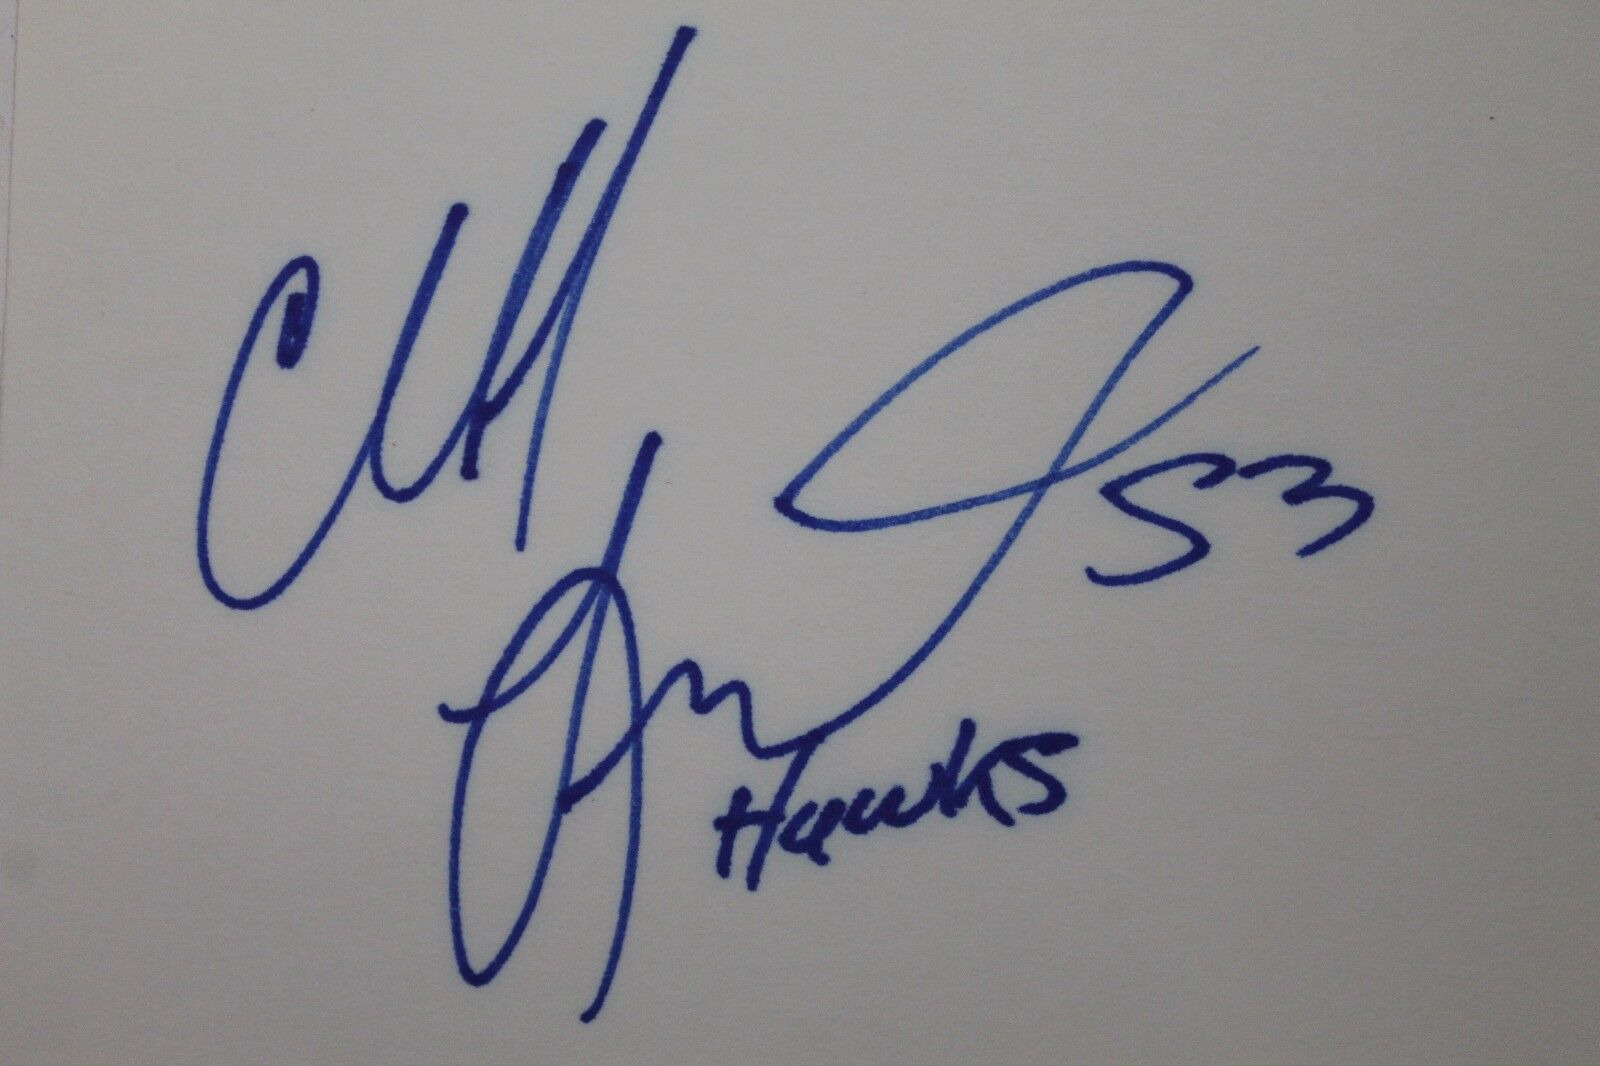 Cliff Levingston Atlanta Hawks Bulls Wichita St Autographed 3x5 Index Card 16l